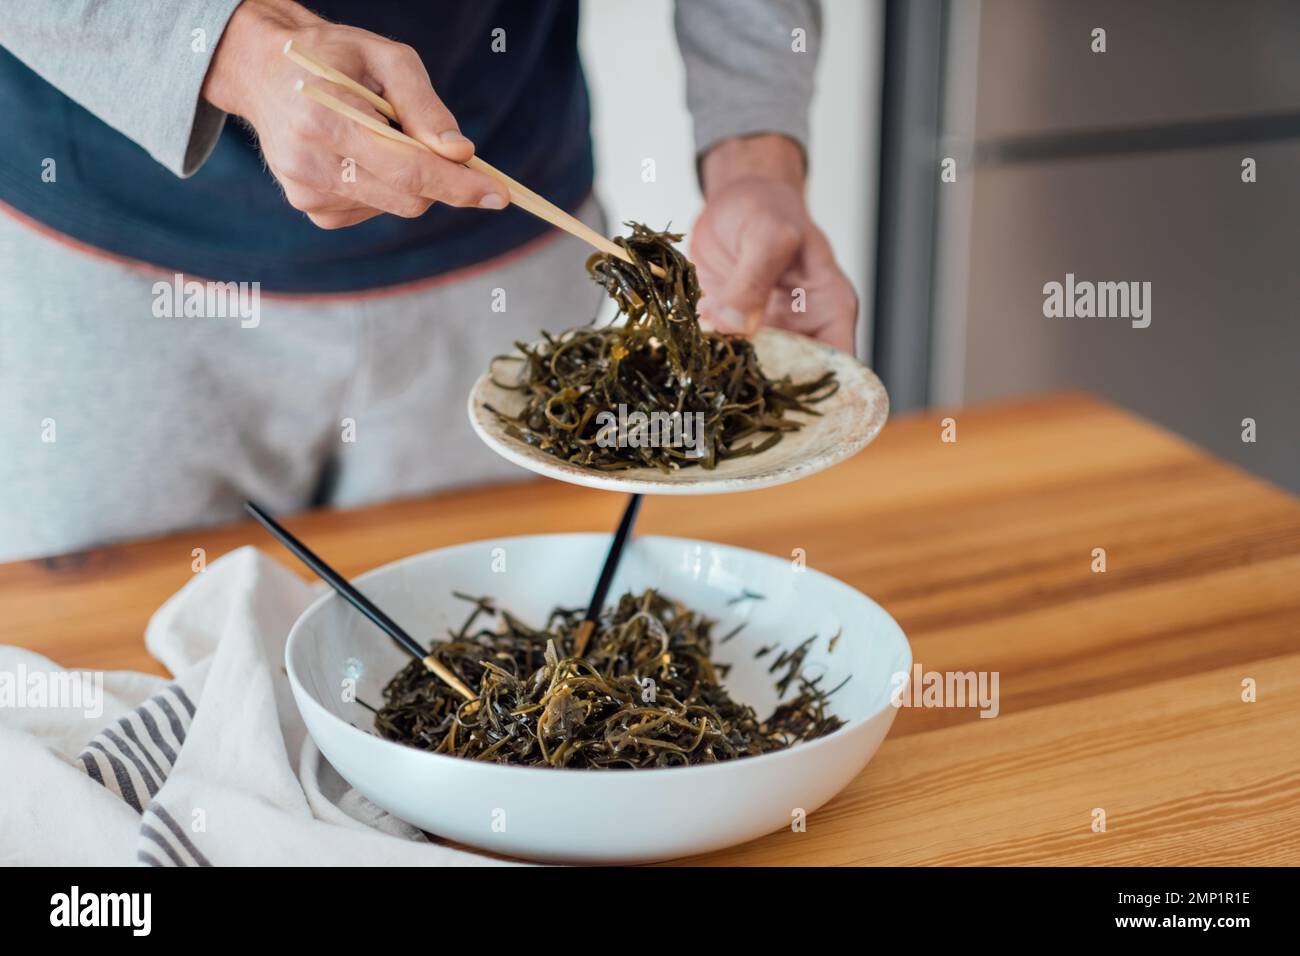 Insalata di alghe sul tavolo l'uomo mangia con bacchette insalata di laminaria preparata a casa Foto Stock